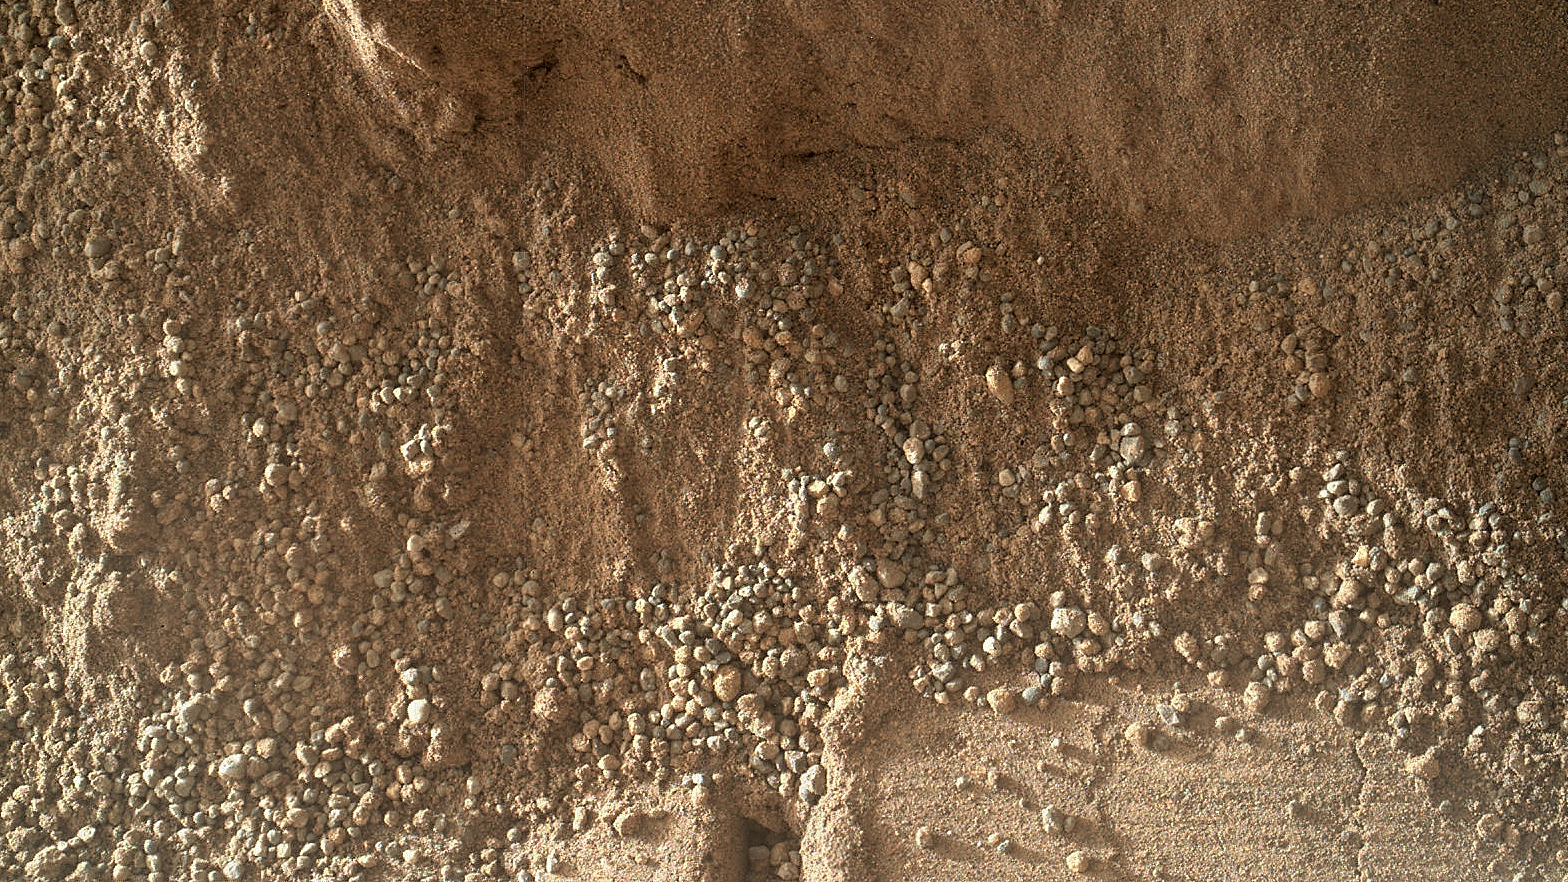 sandstone on Mars